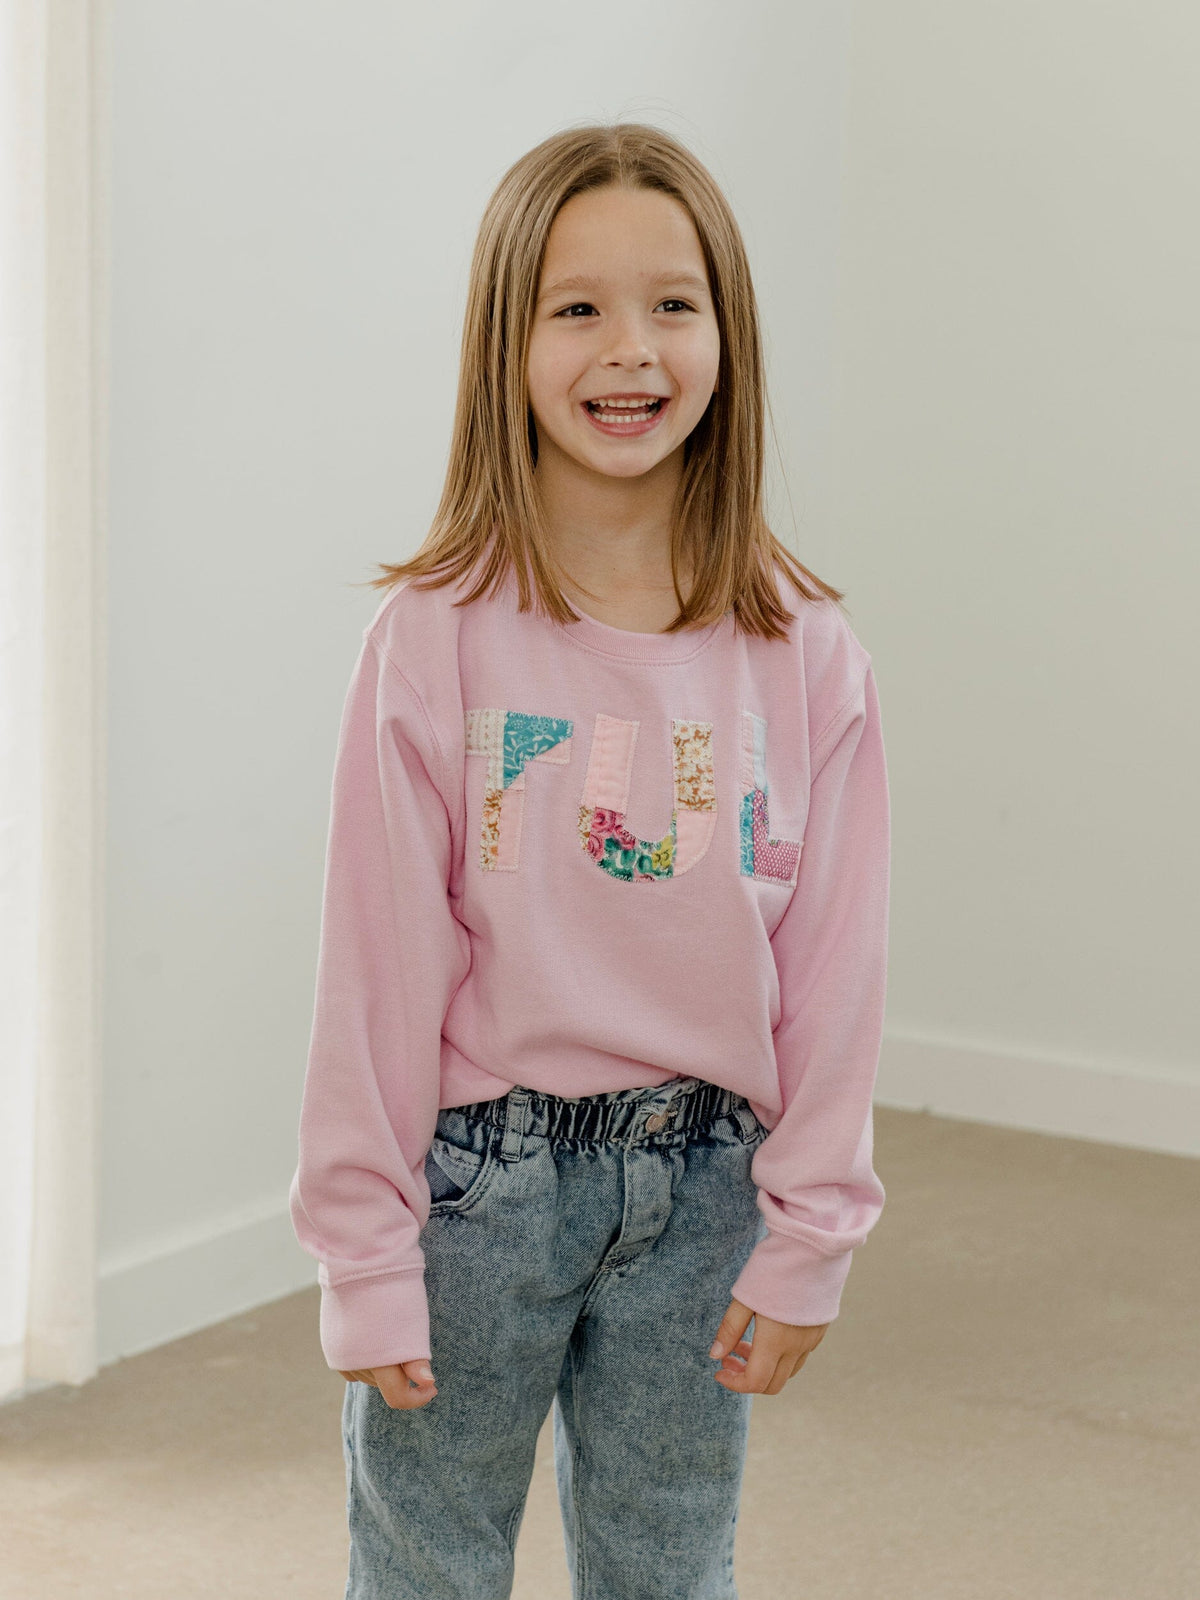 Children's TUL Tulsa Quilt Applique Pink Sweatshirt size Youth 7